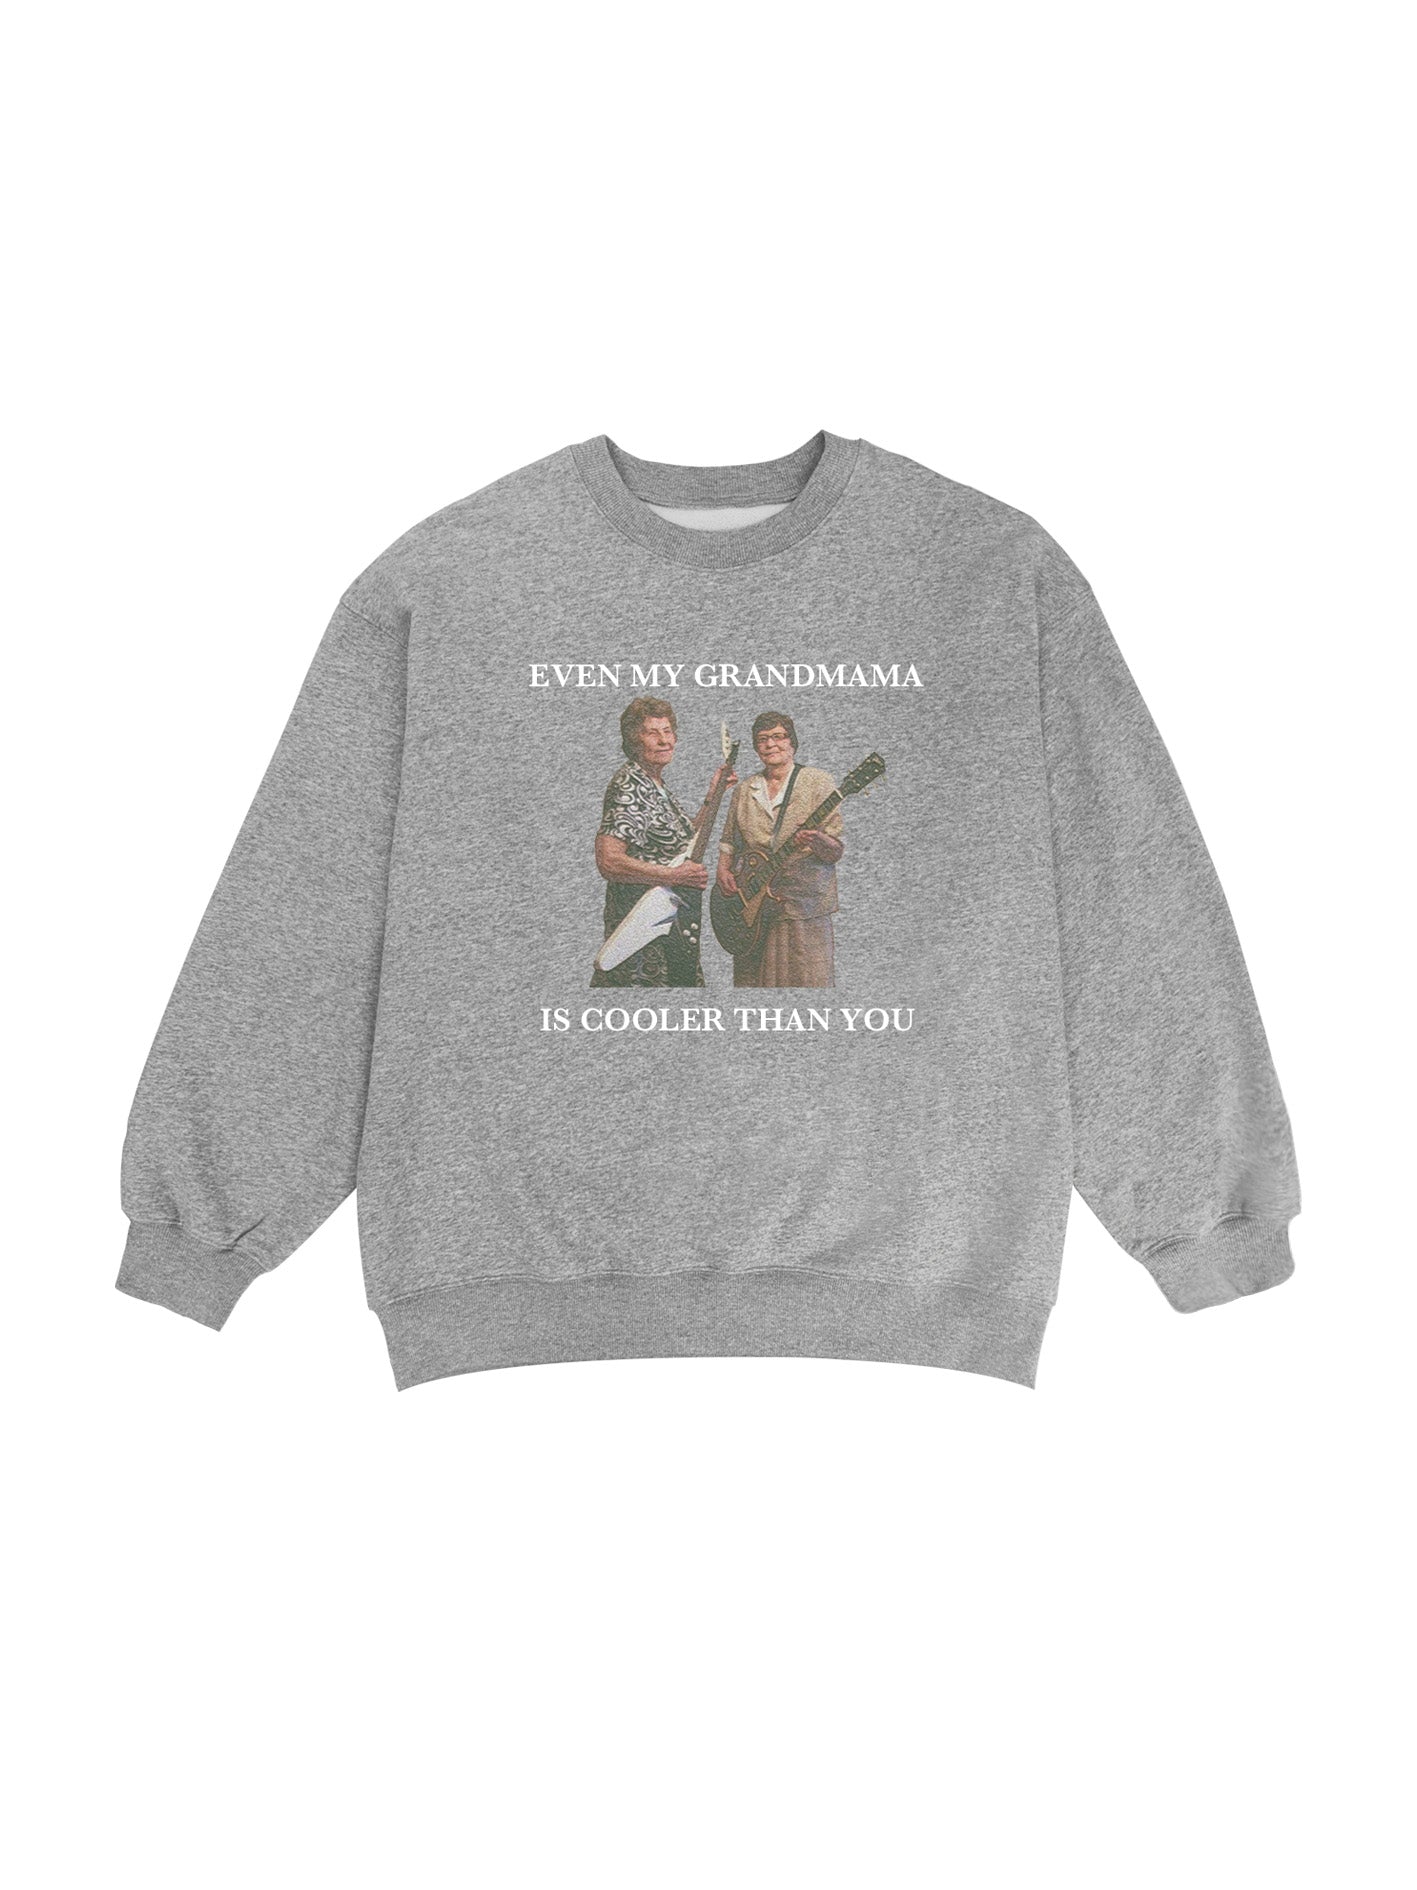  white type Grandmama Band sweatshirt